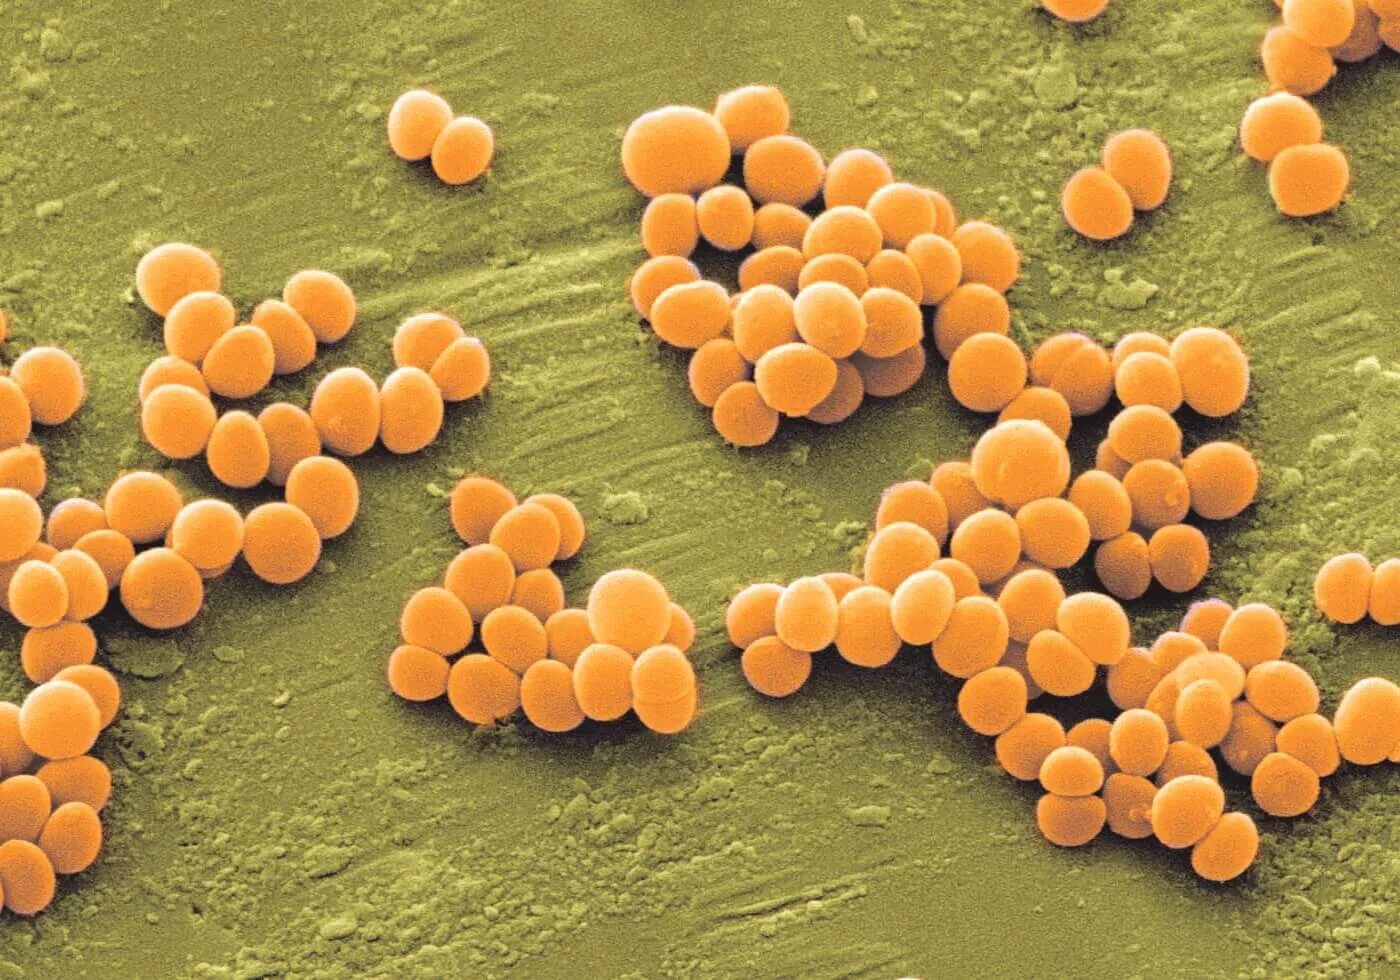 Врачи золотистый стафилококк. S. aureus золотистый стафилококк. Стафилококк золотистый Staphylococcus aureus. Метициллин-устойчивый золотистый стафилококк. Стафилококки сапрофиты.